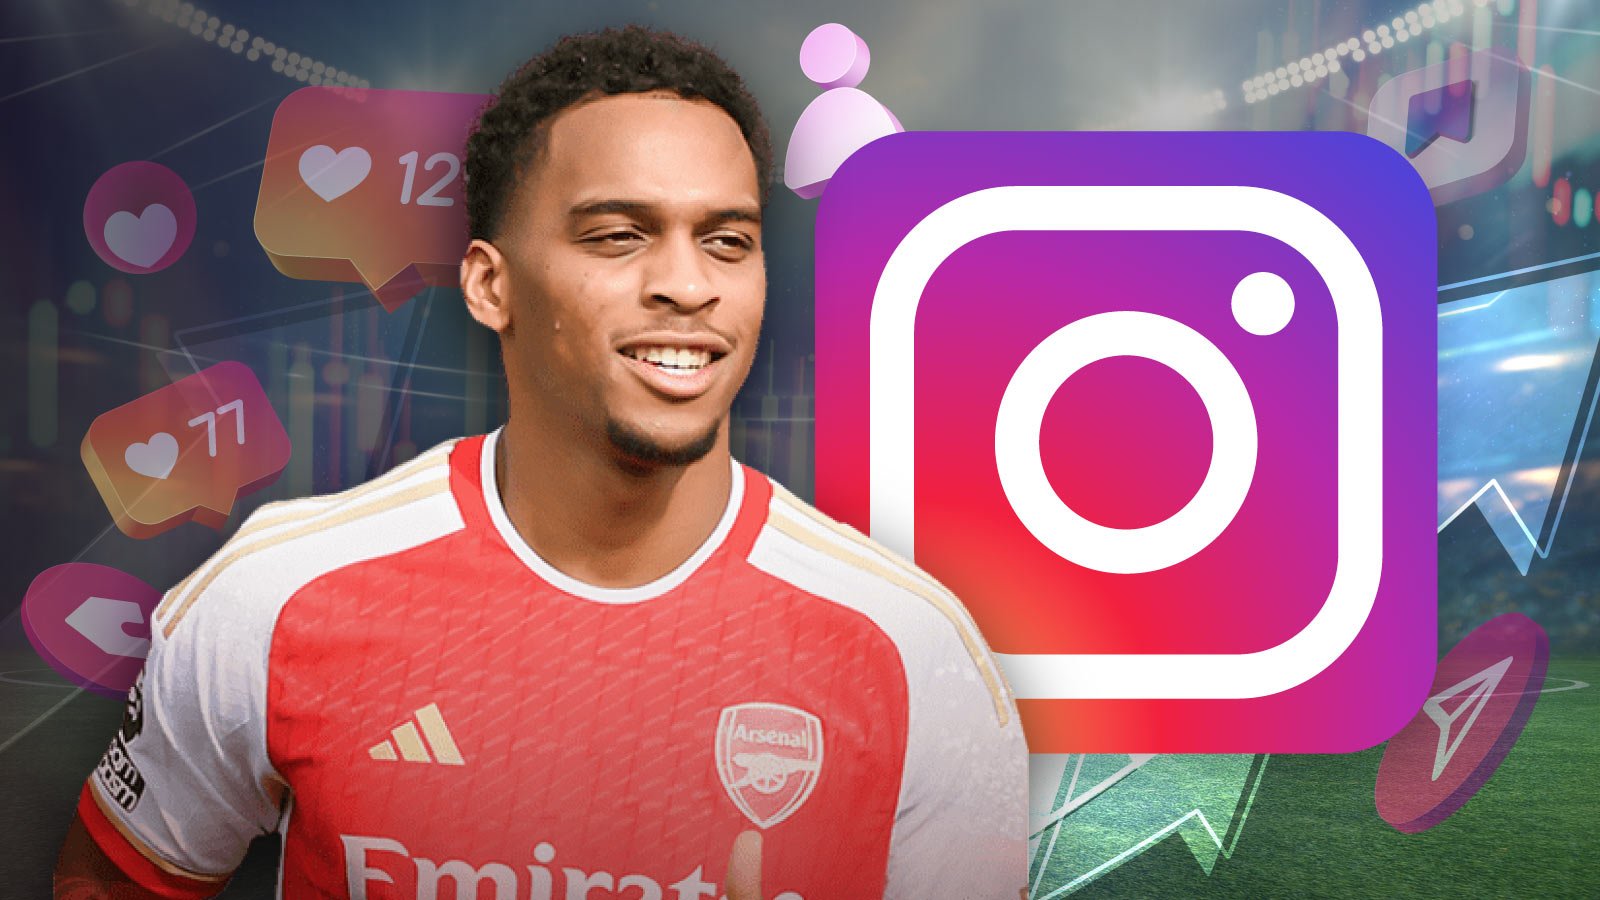 Jurrien Timber Instagram Boost After Arsenal Goal